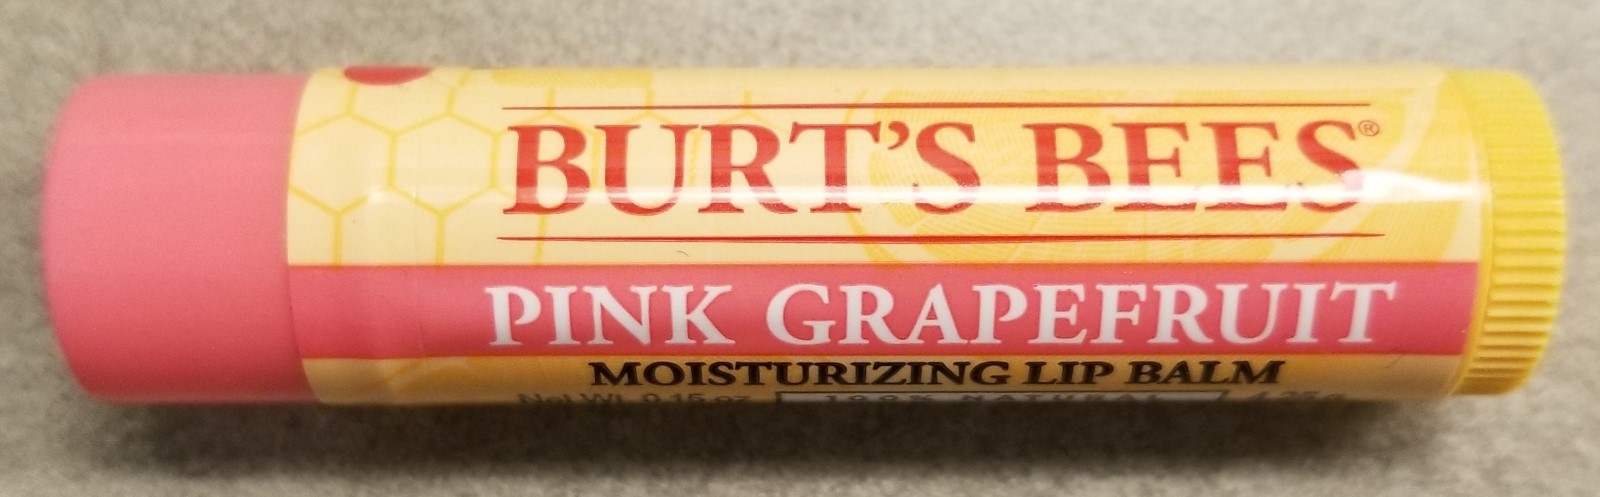 伯特蜂润唇膏图片:粉红葡萄柚